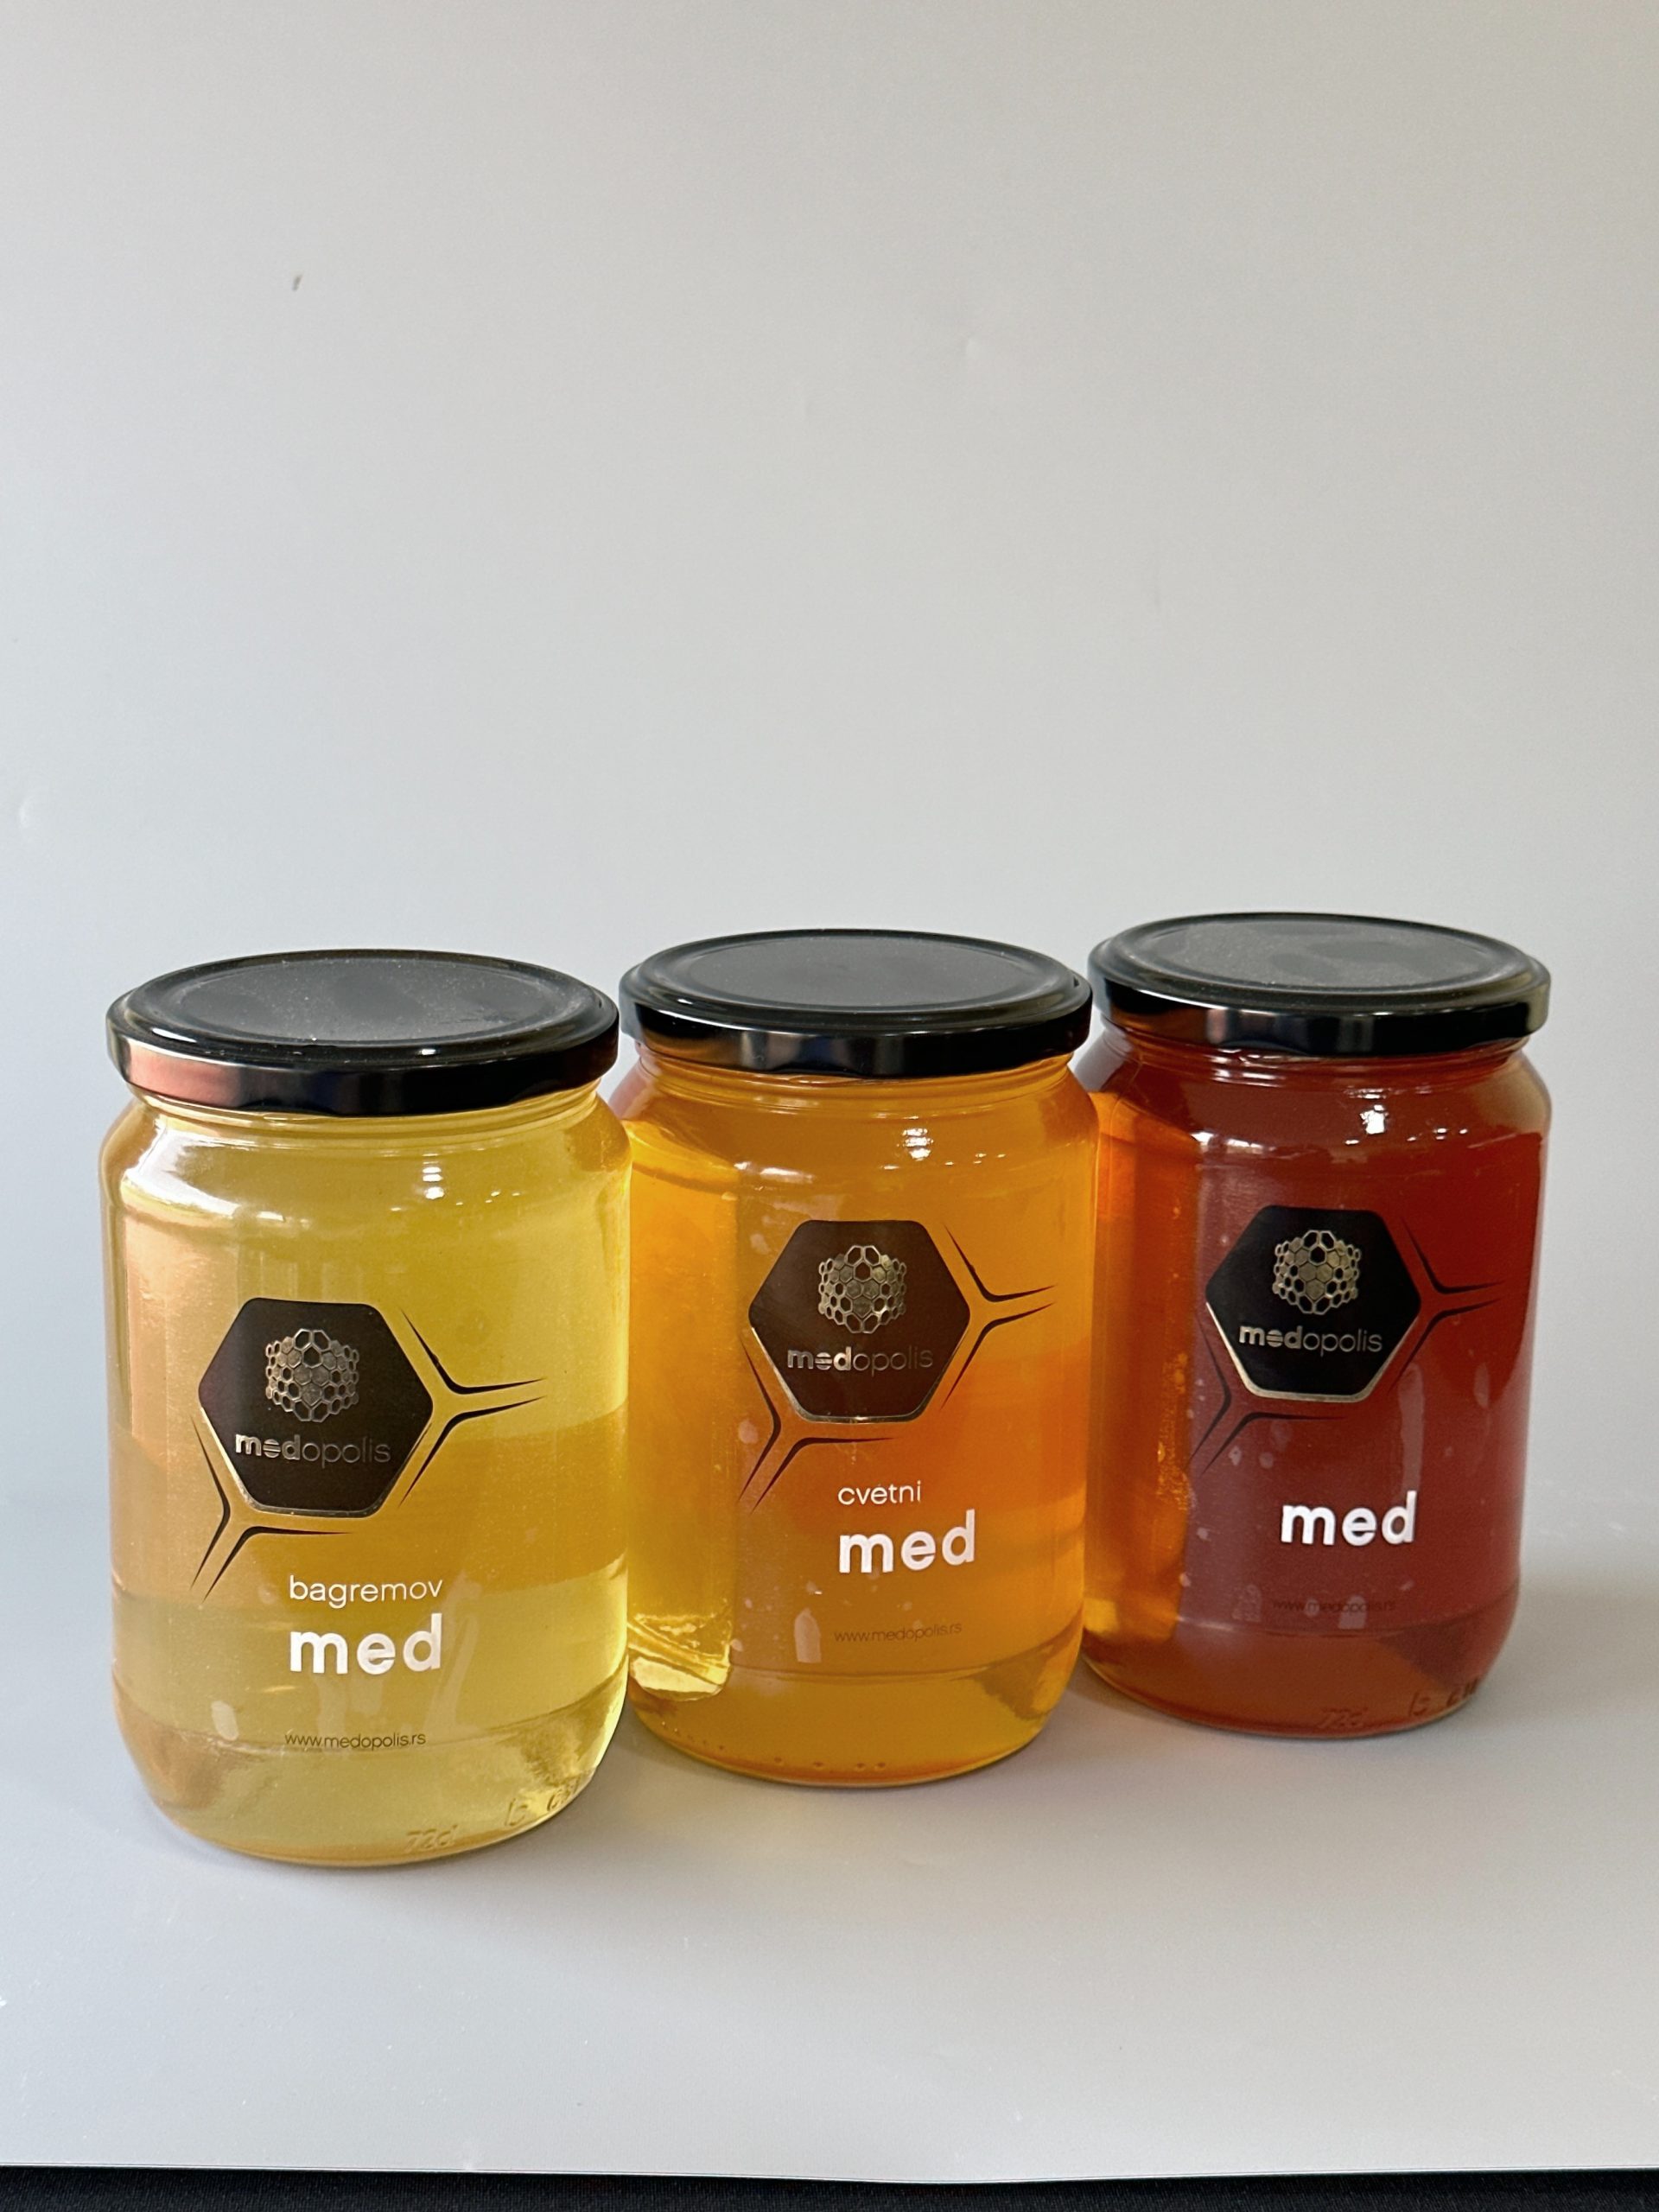 Цветни мед који потиче из Баната и добија се од мешавине нектара са сунцокрета и ливаде обично има јединствену комбинацију арома и укуса